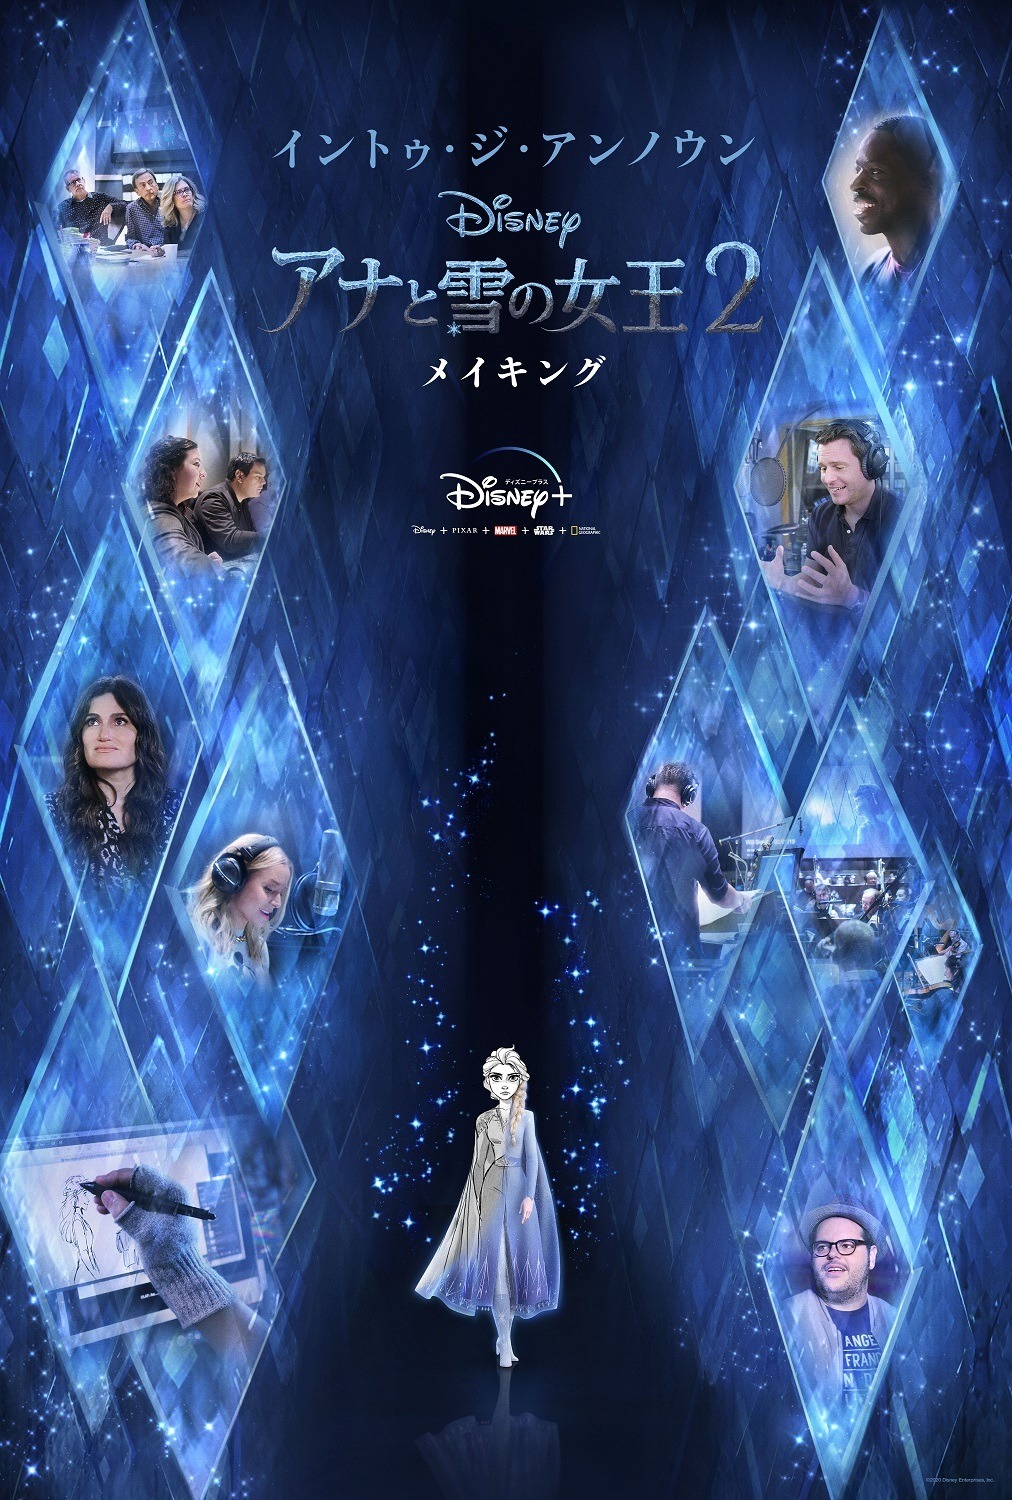 アナと雪の女王2 名曲誕生の裏側に迫る 製作現場に密着したドキュメンタリー Disney で日本初 独占配信 アニメ アニメ